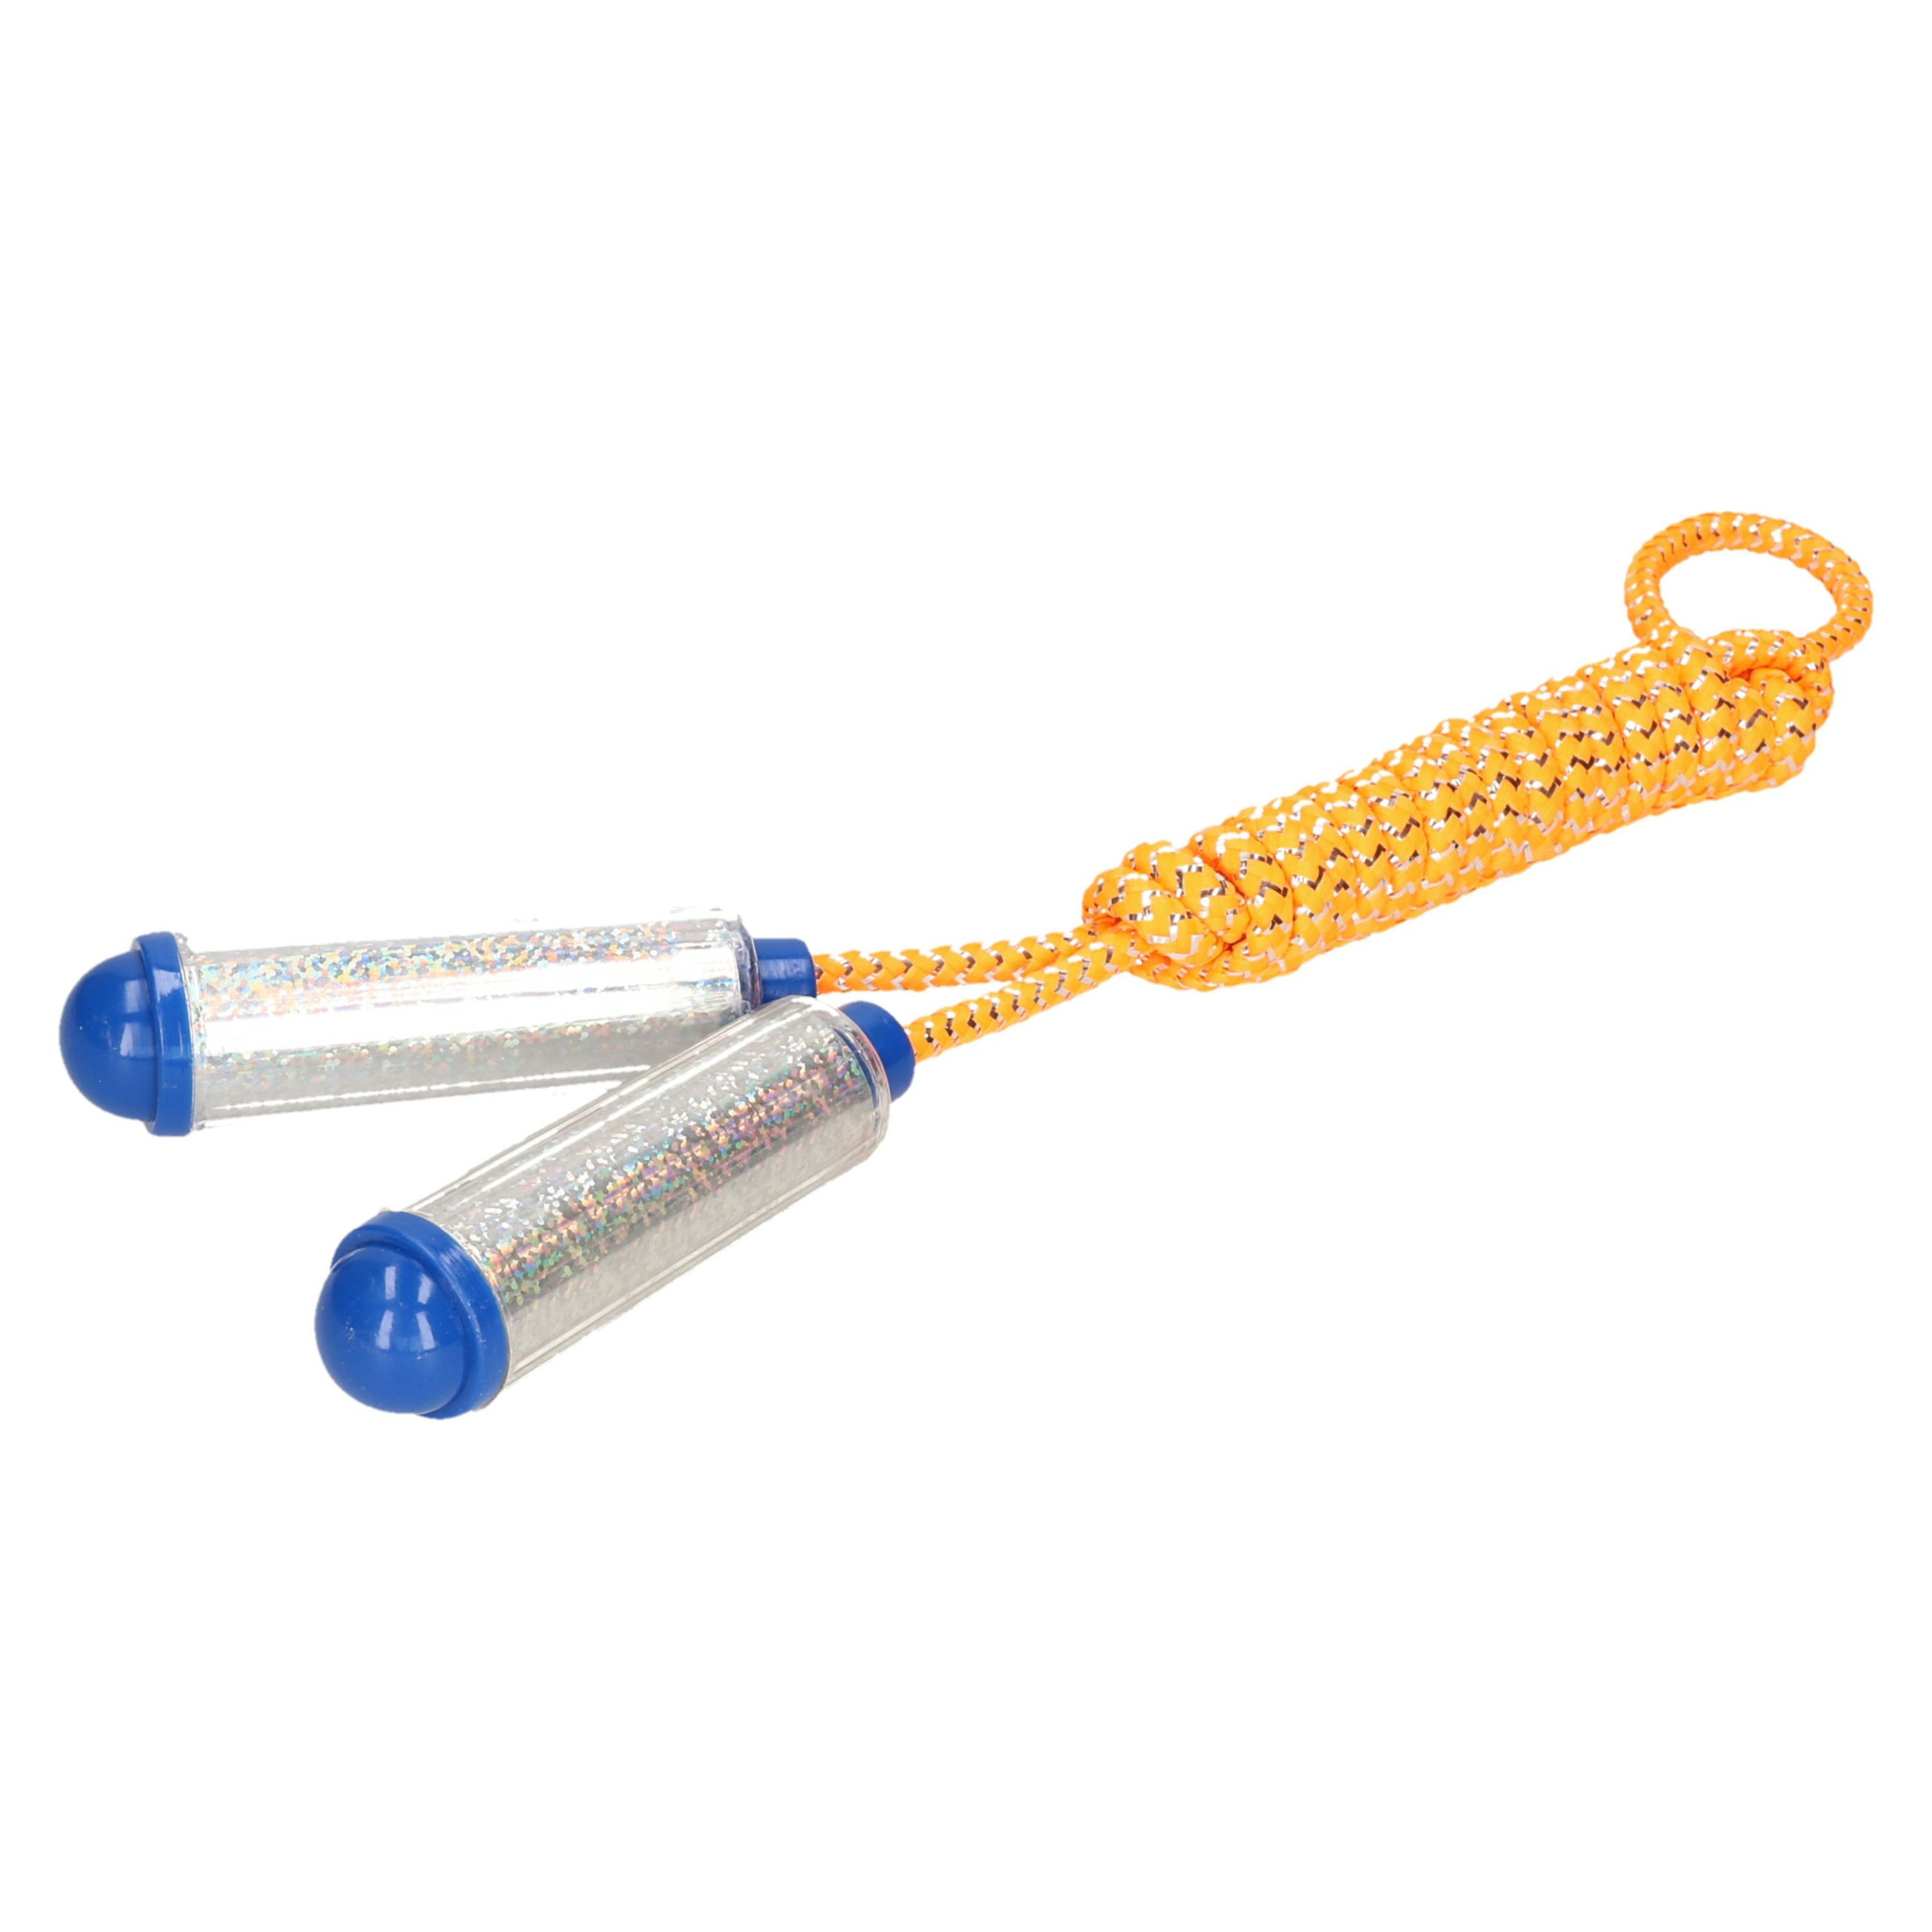 Springtouw - met kunststof handvatten - geel/zilver - 210 cm - speelgoed